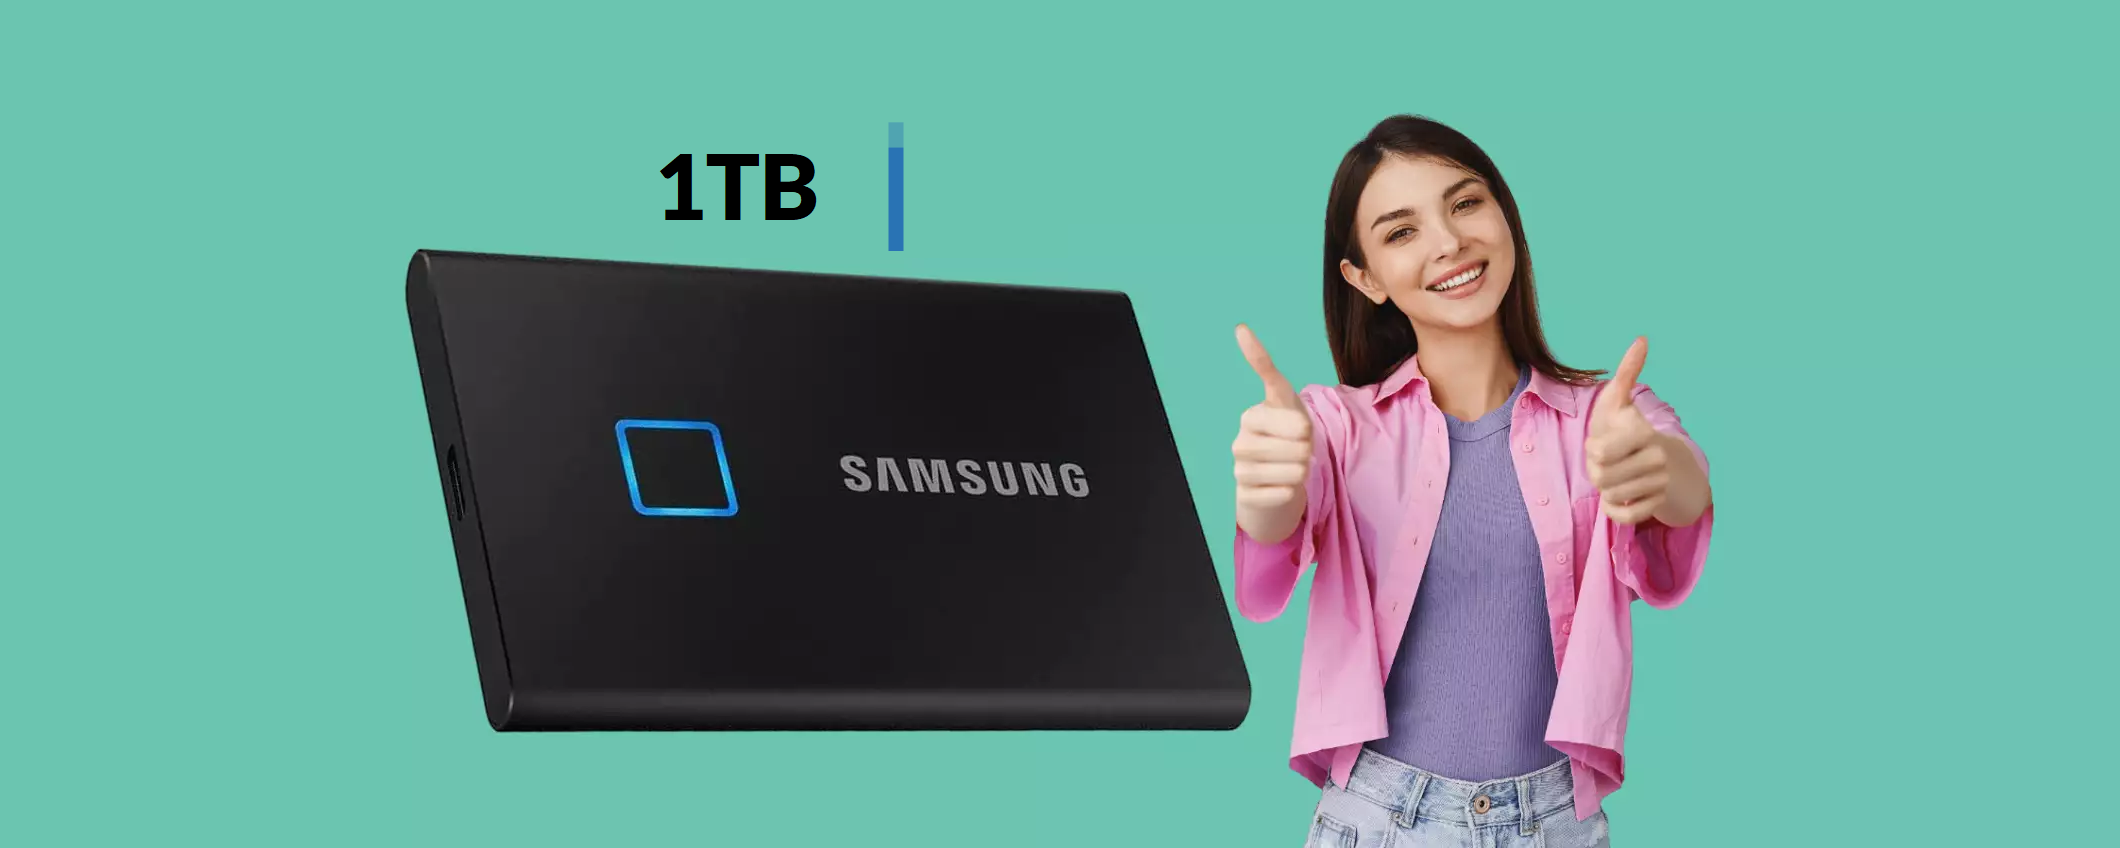 SSD esterno 1TB Samsung: dati PROTETTI con l'impronta digitale